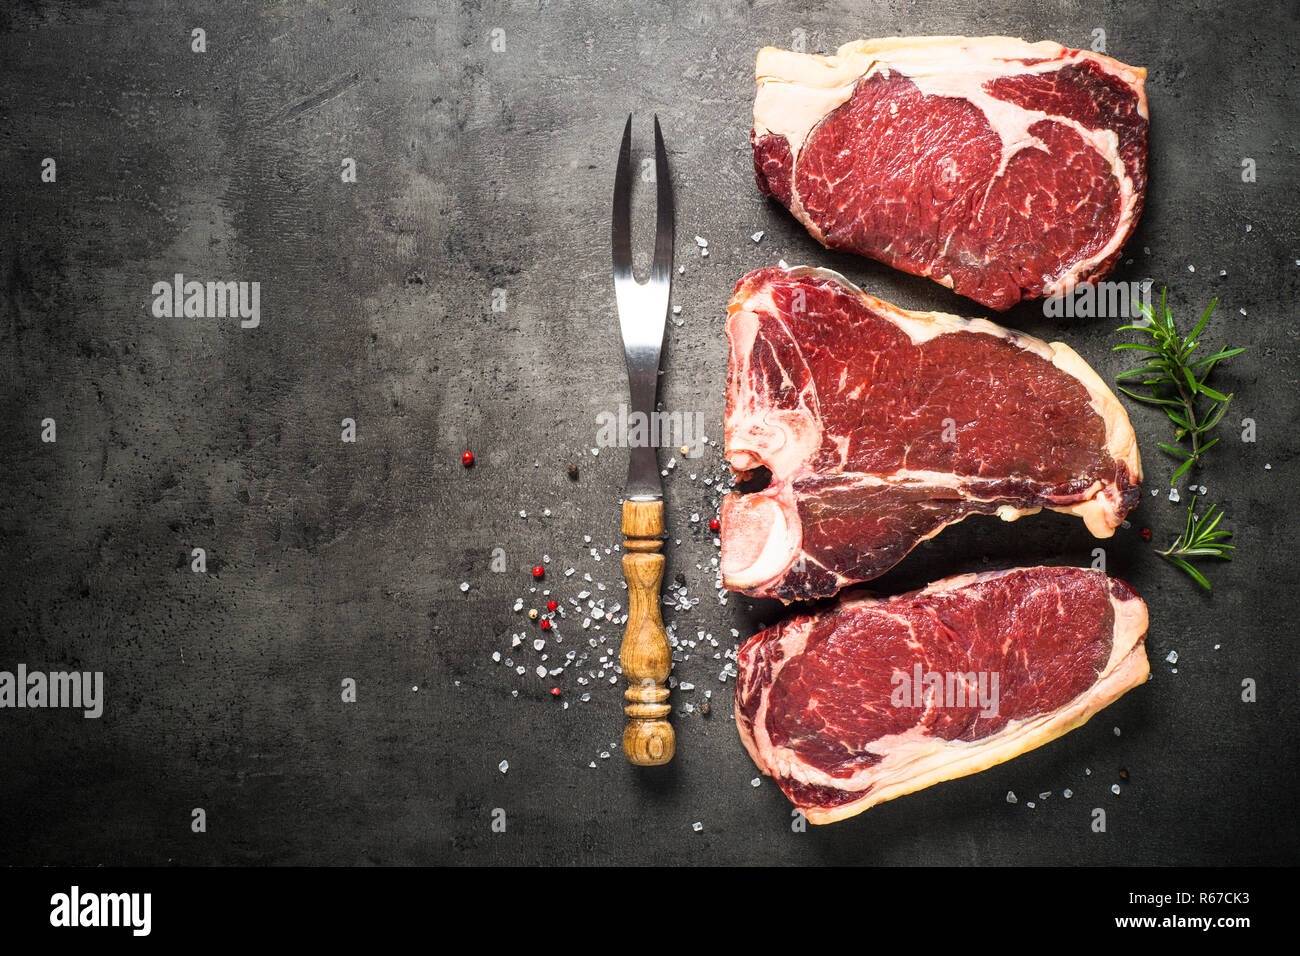 Le bœuf vieilli à sec - steaks de contre-filet, faux-filet, t-bone steaks sur noir Banque D'Images